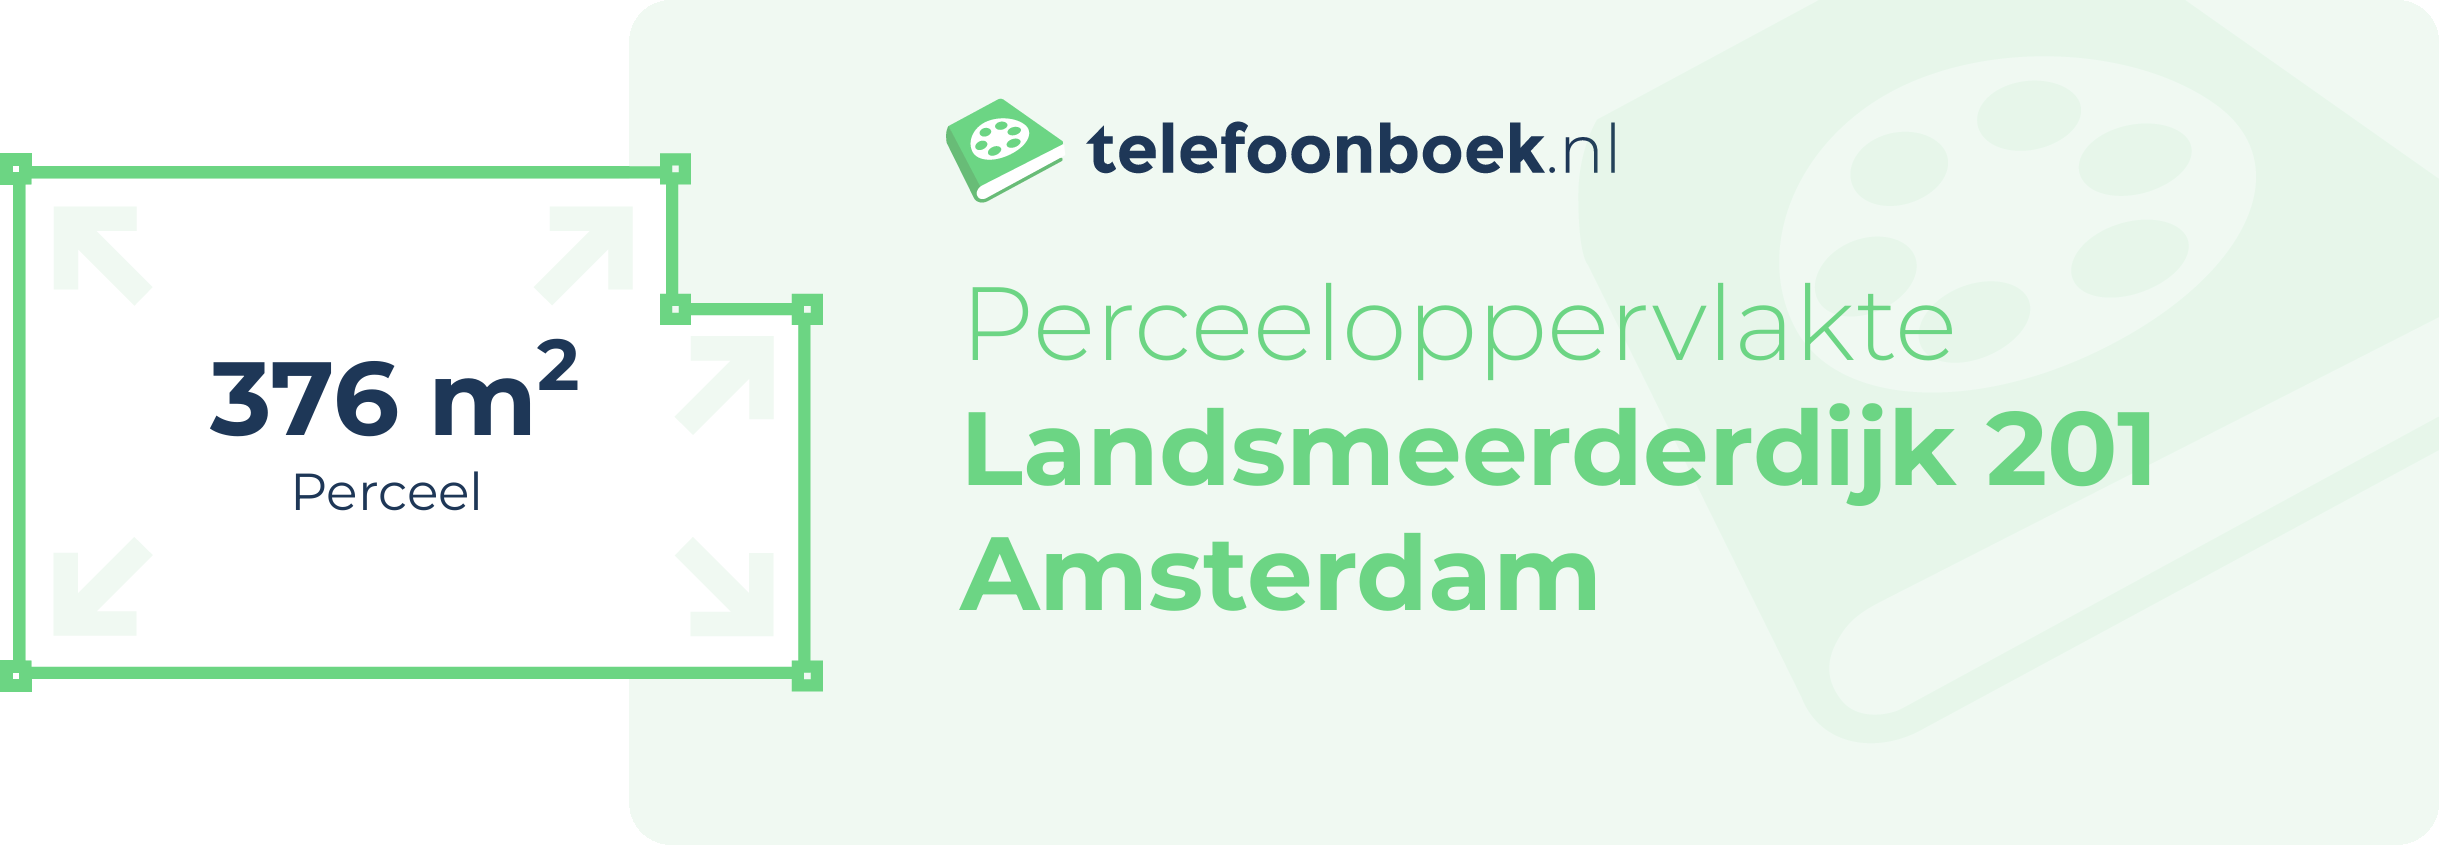 Perceeloppervlakte Landsmeerderdijk 201 Amsterdam